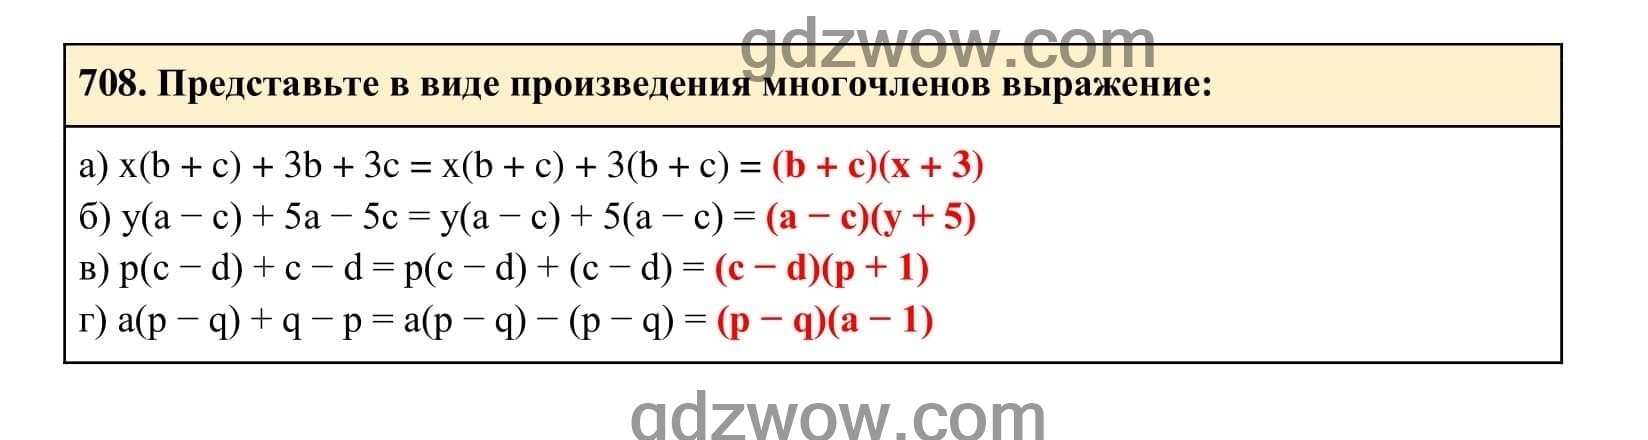 Упражнение 708 - ГДЗ по Алгебре 7 класс Учебник Макарычев (решебник) - GDZwow